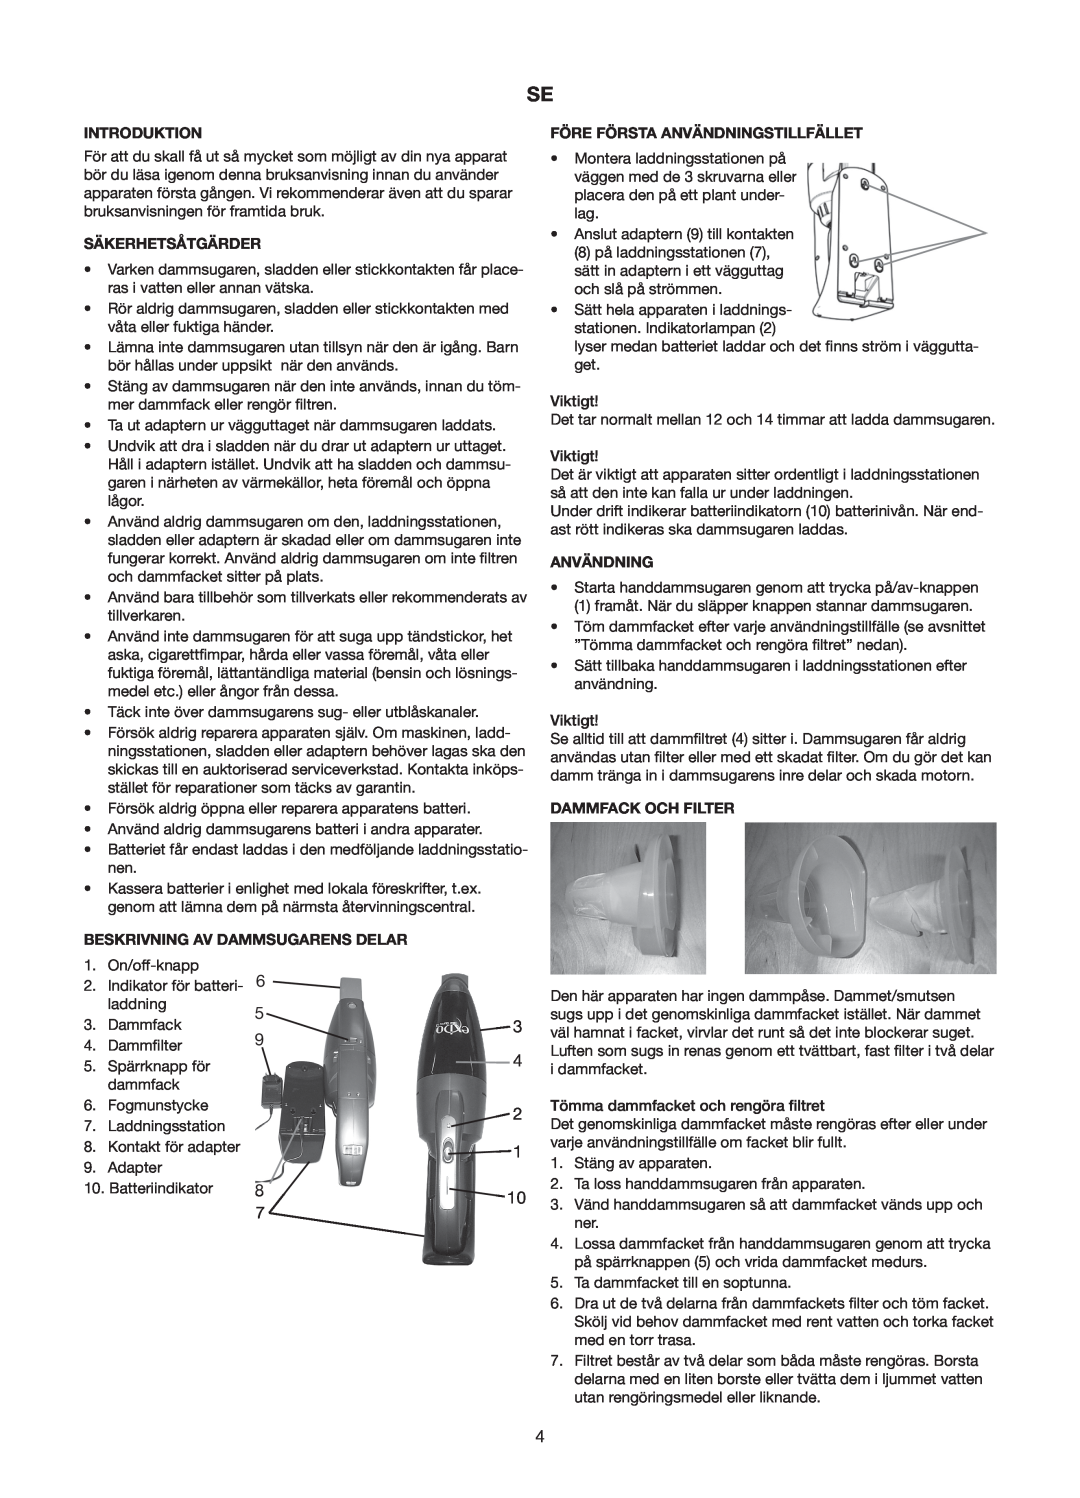 Melissa 240-112/113 manual Säkerhetsåtgärder, Före Första Användningstillfället, Dammfack Och Filter, Introduktion 